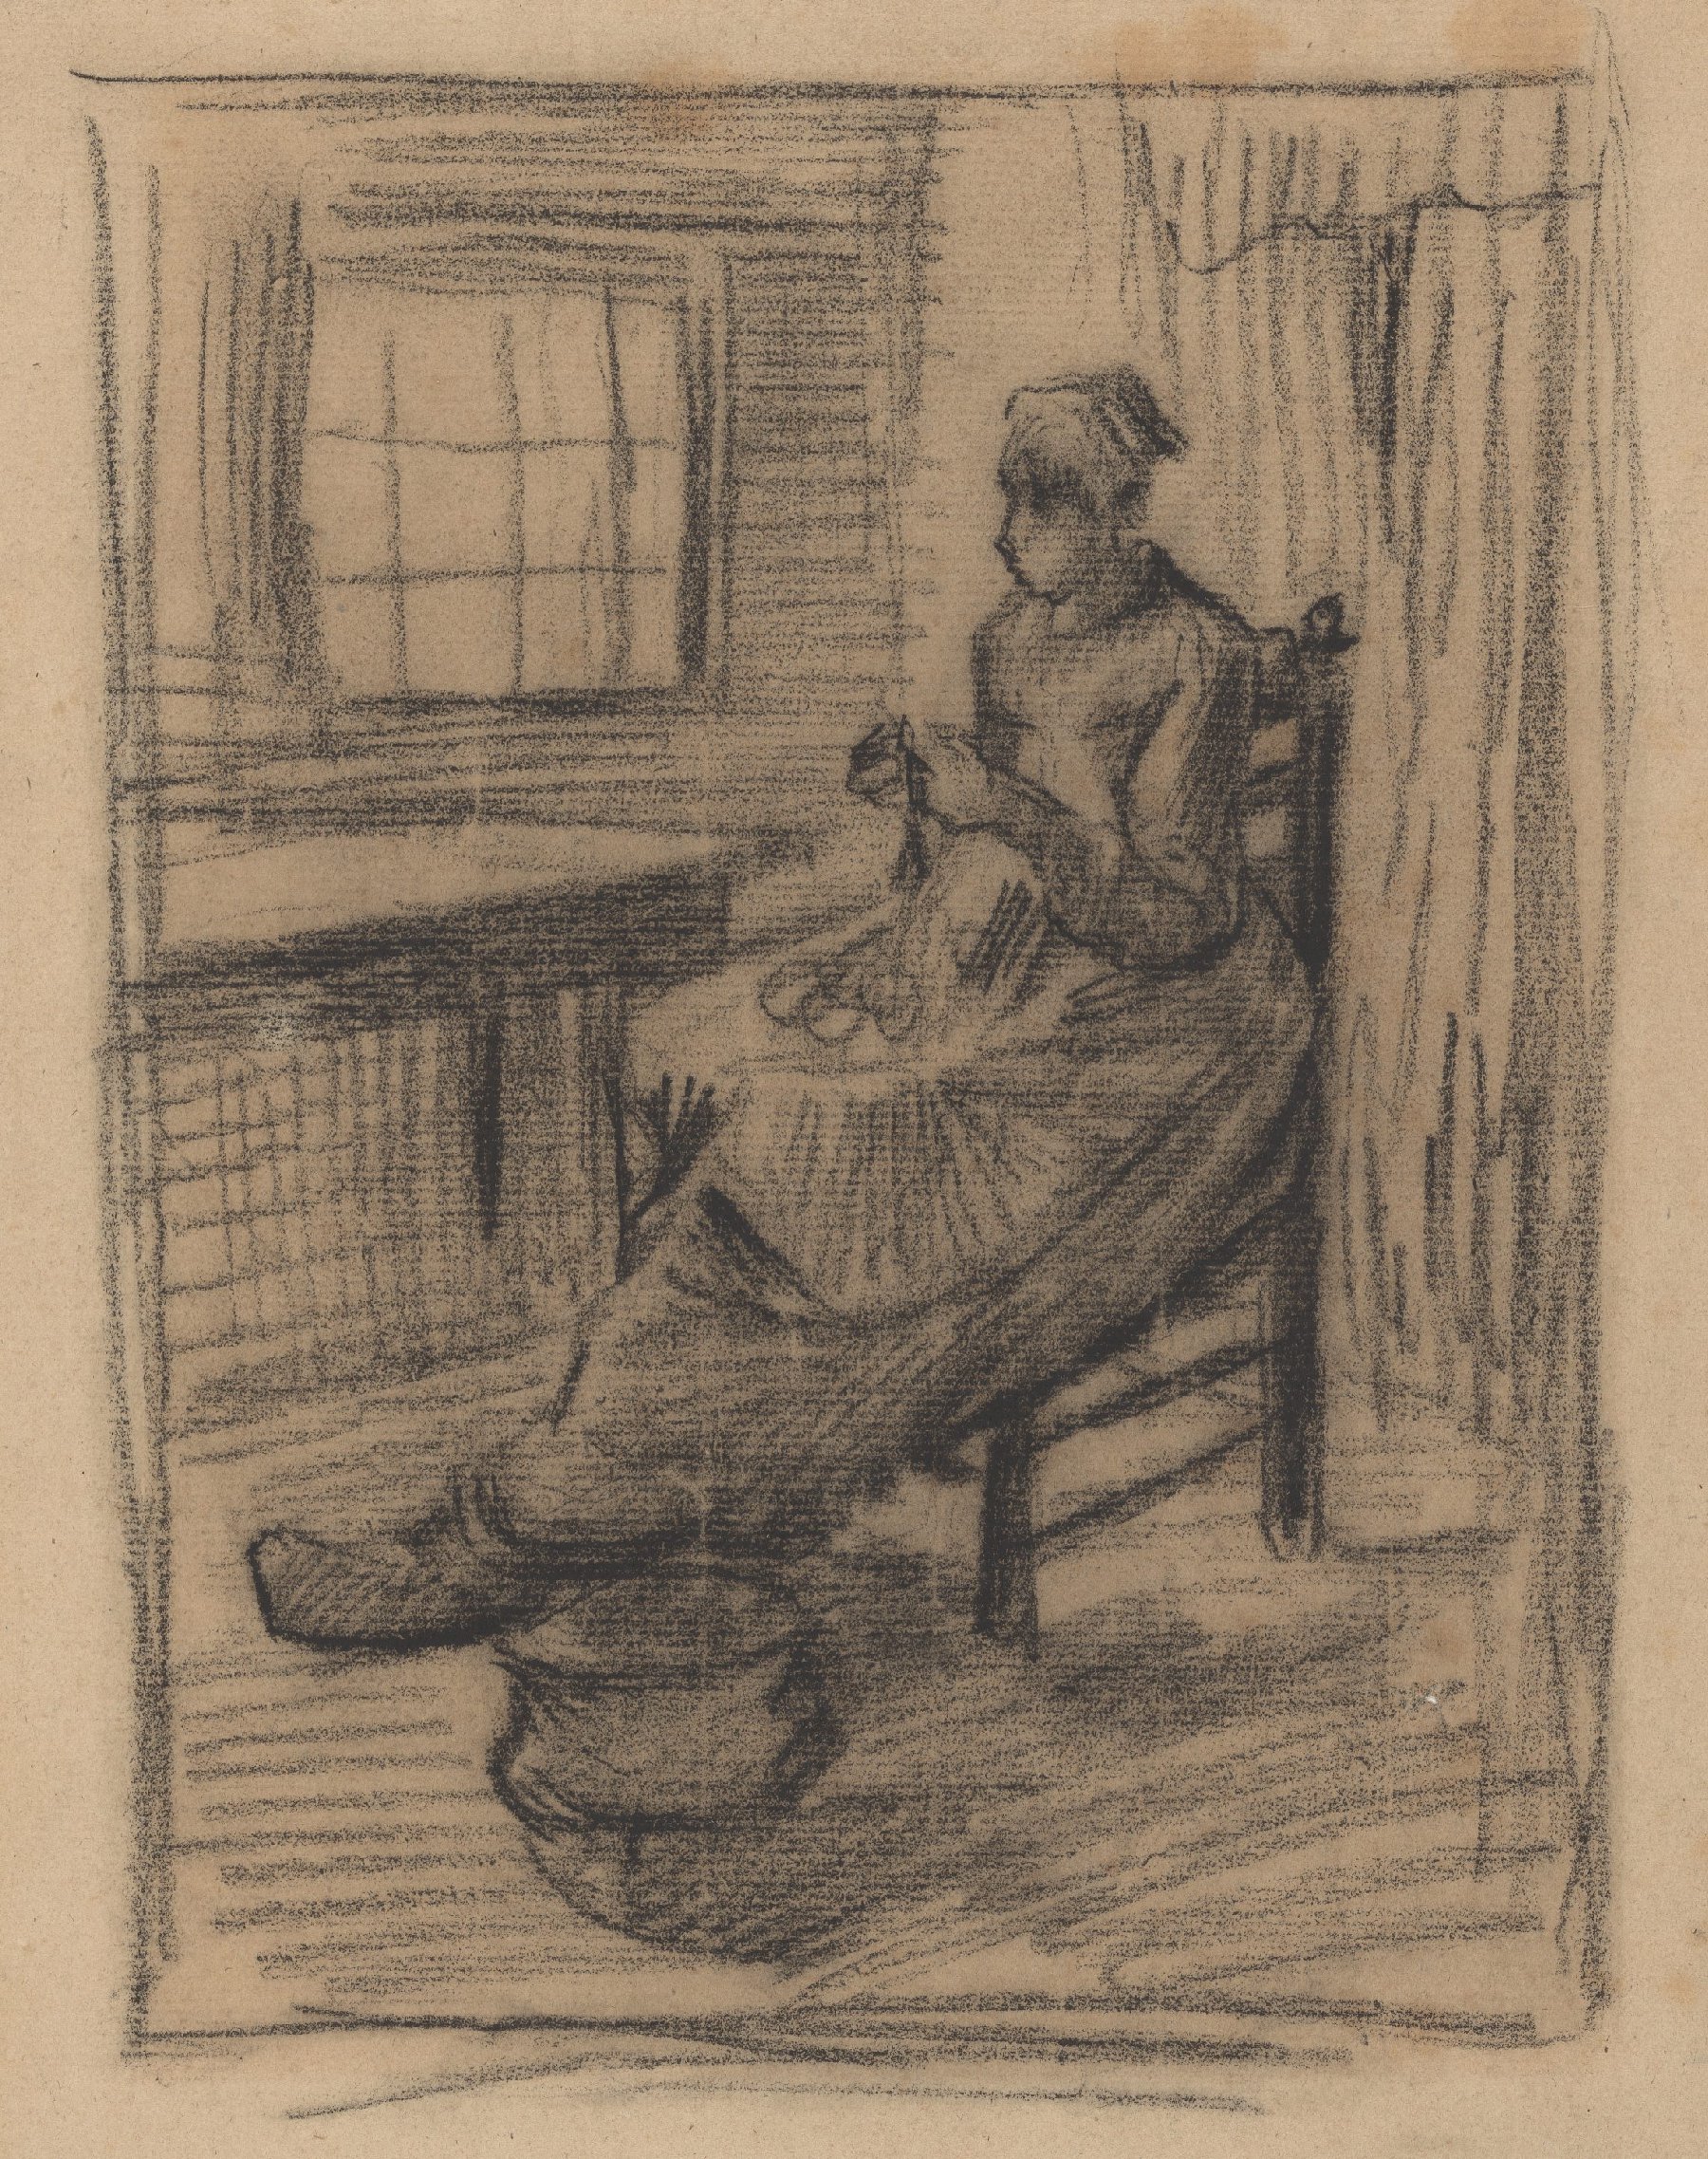 Aardappelschillende vrouw Vincent van Gogh (1853 - 1890), Nuenen, maart-april 1885